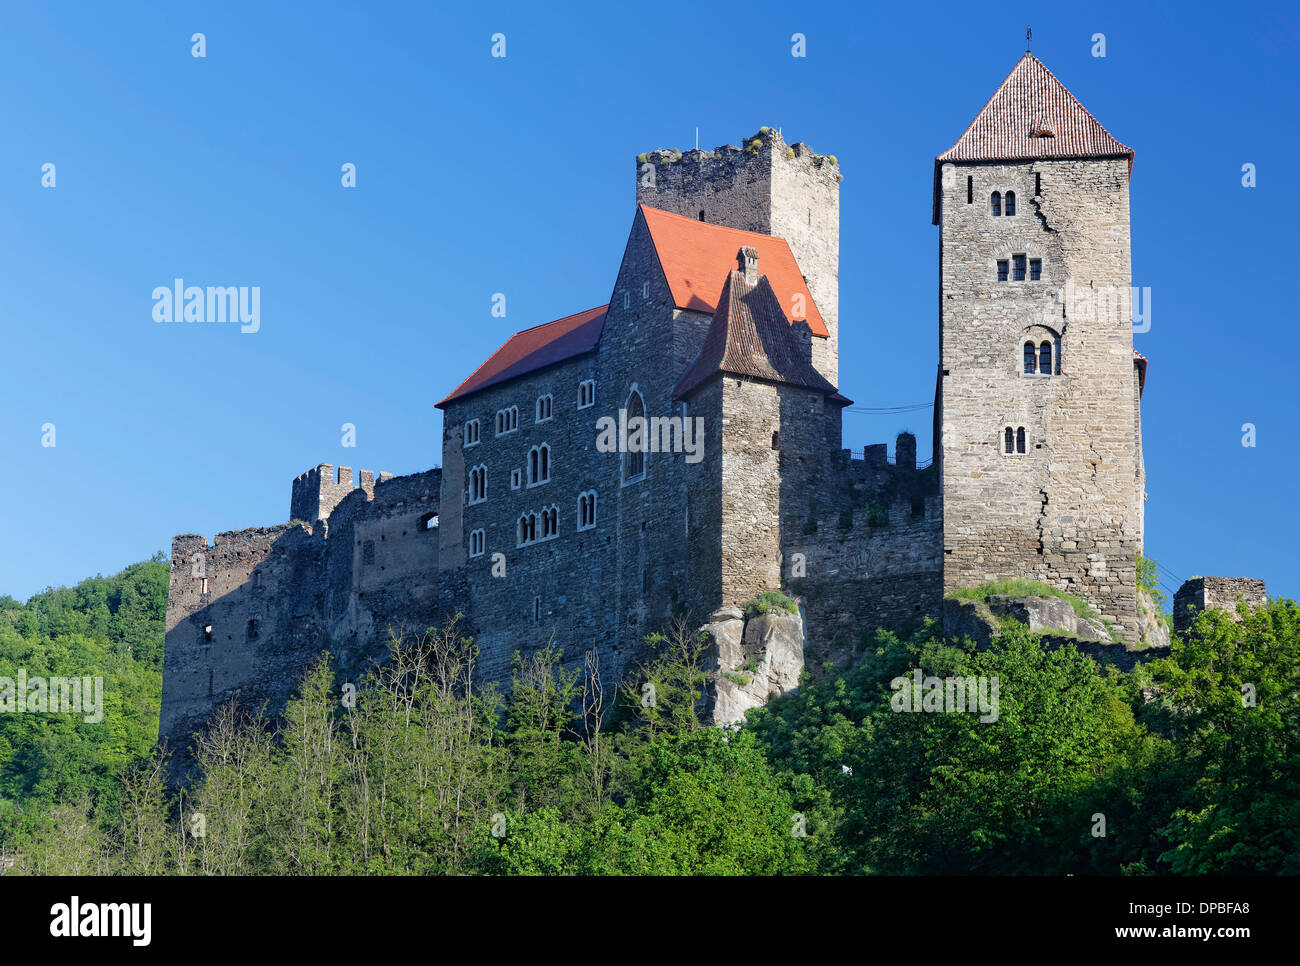 Austria, Upper Austria, Hardegg, Hardegg Castle Stock Photo